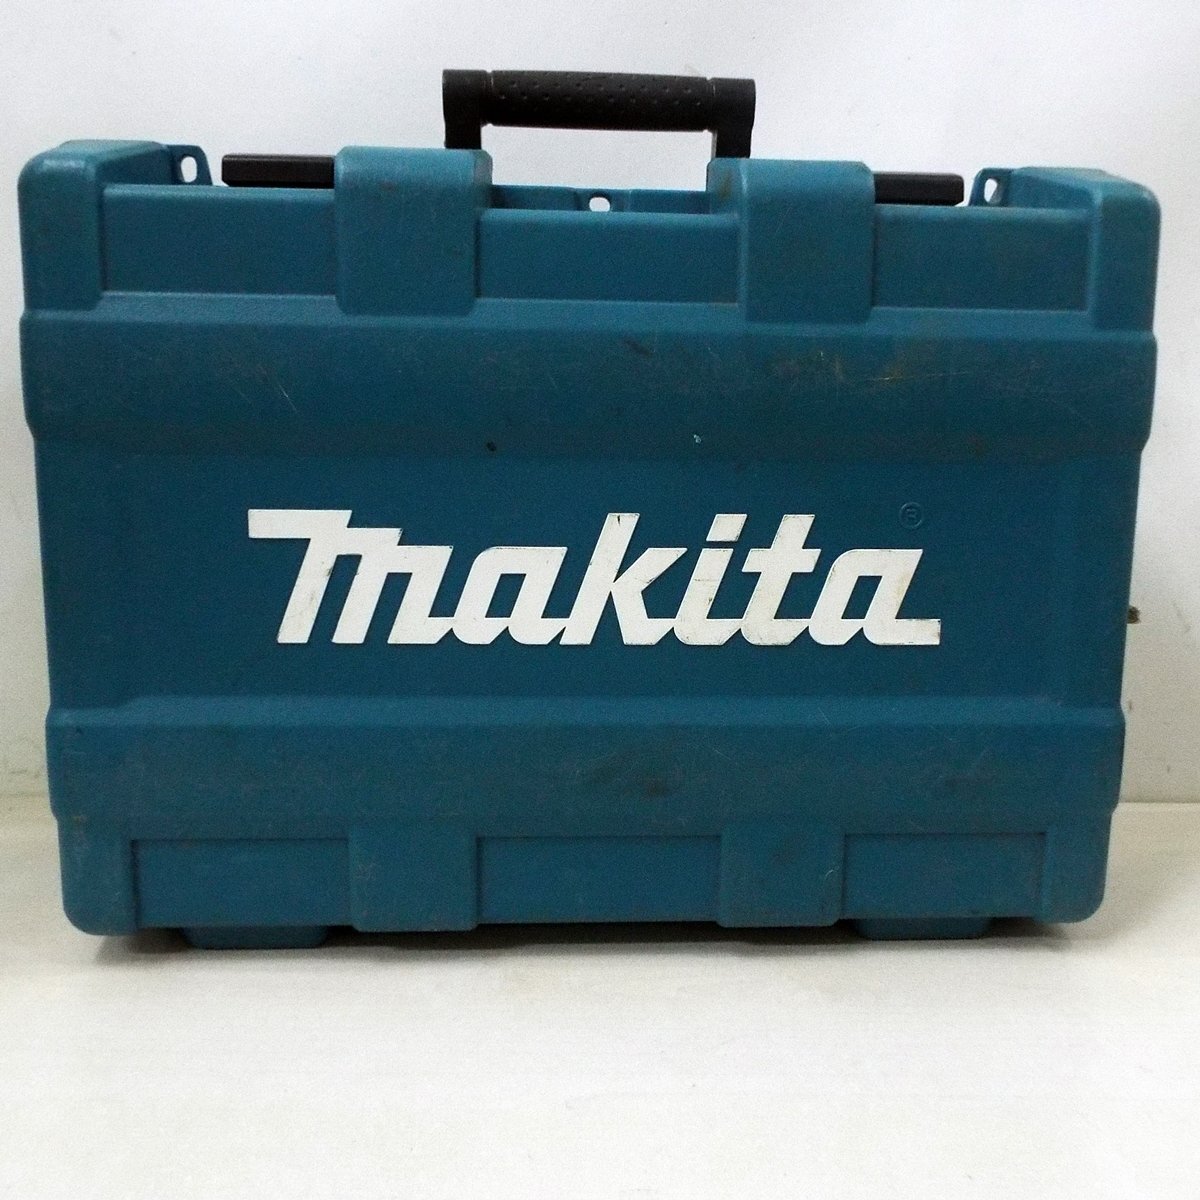 E*makita Makita заряжающийся ударный гайковерт TW1001D инструмент аккумулятор BL1860B* с зарядным устройством .* ломбард * утилизация mart . часть магазин *